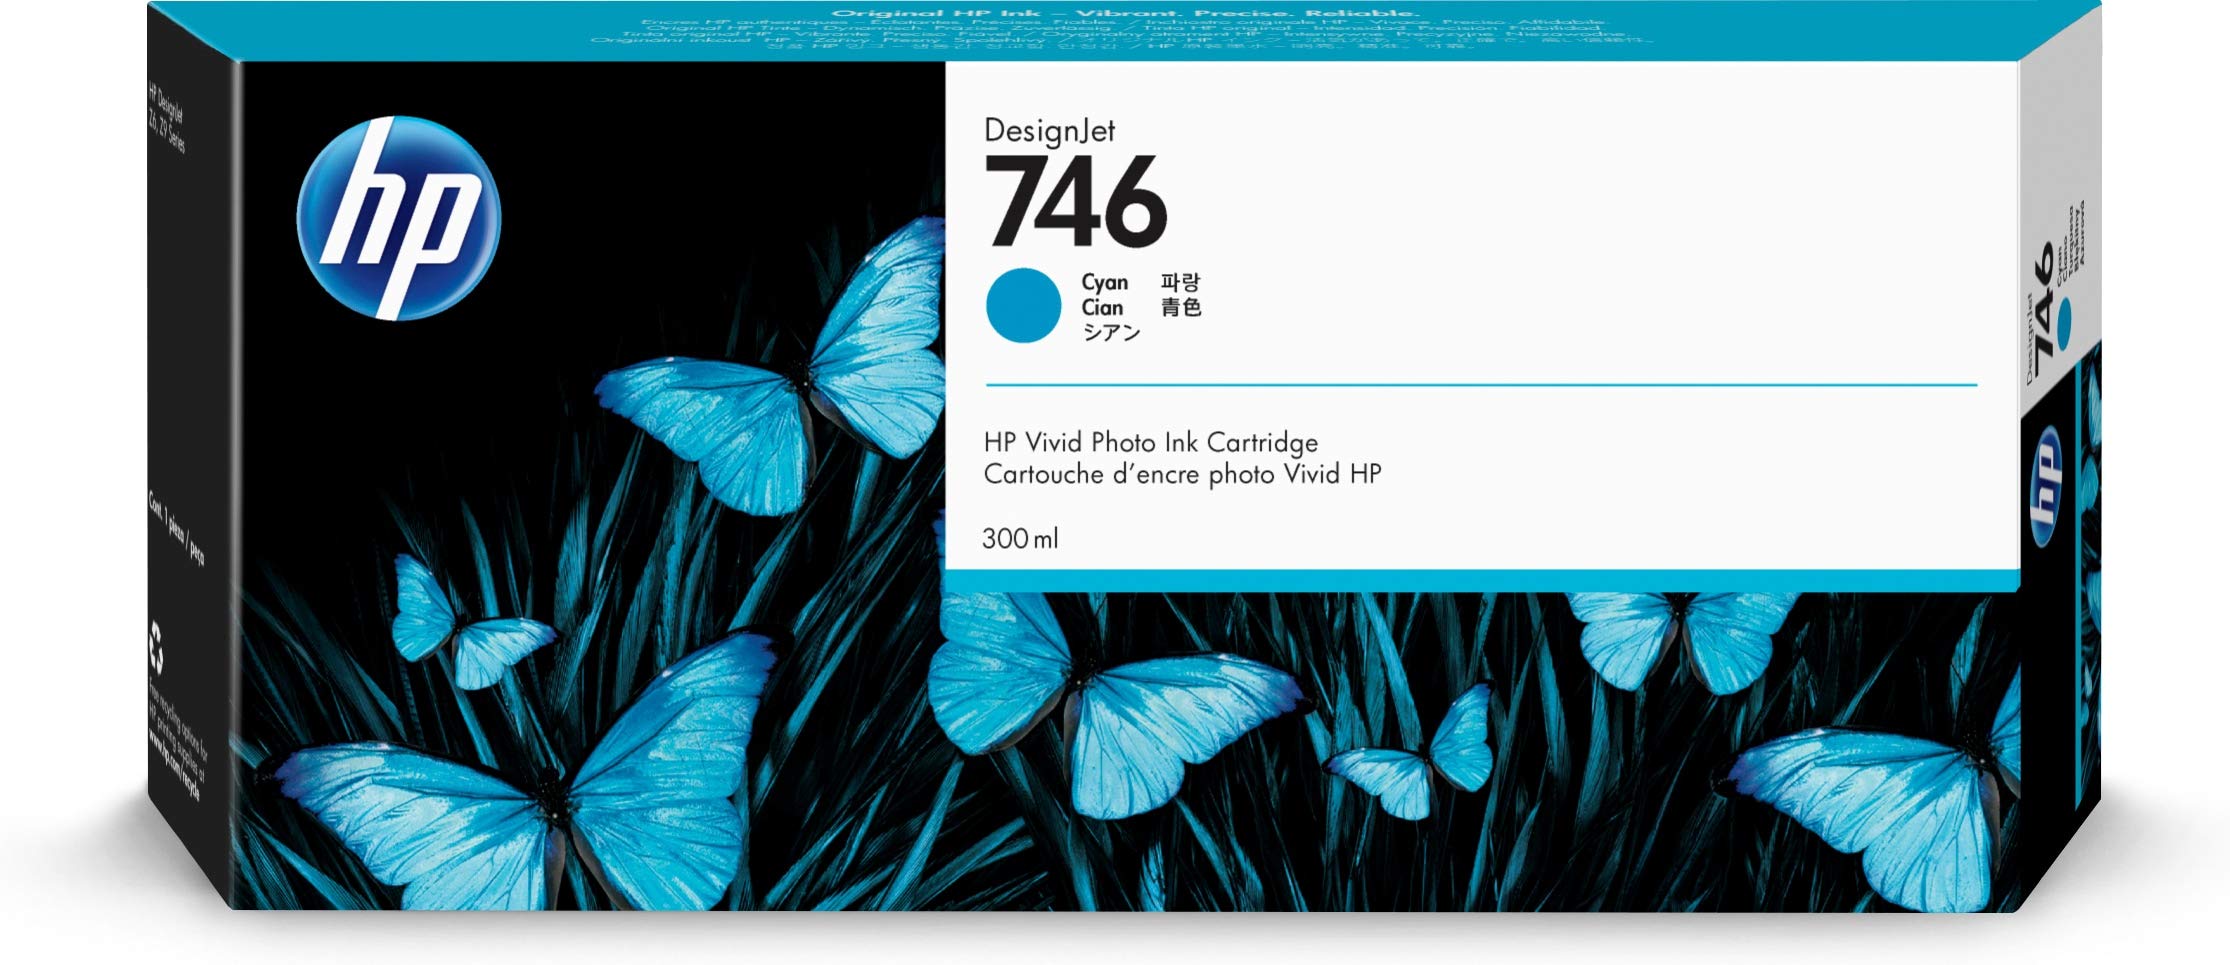 HP डिज़ाइनजेट Z6 और Z9+ बड़े प्रारूप प्रिंटर के लिए 746...